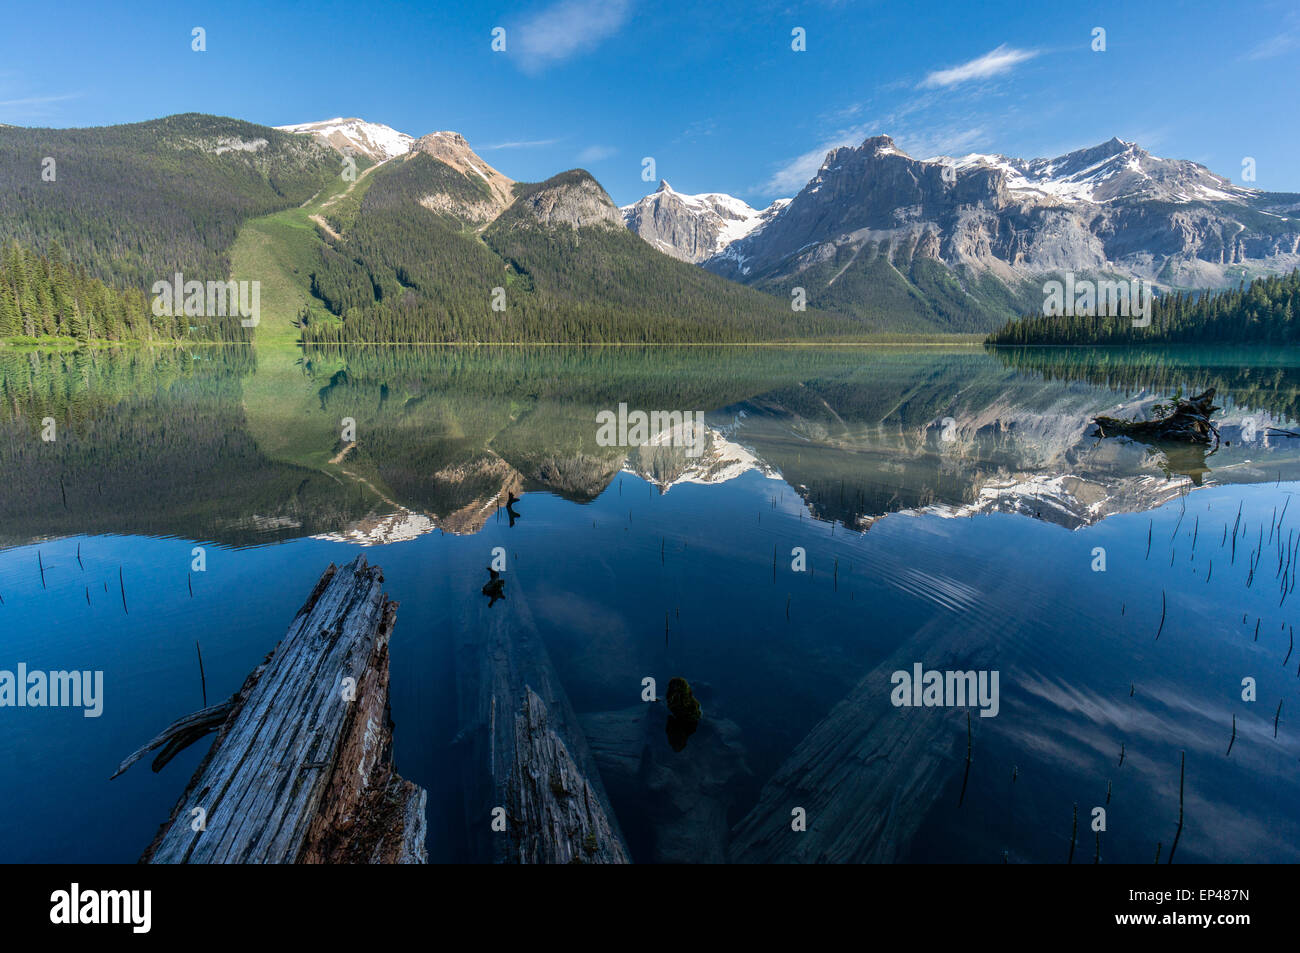 Reflets du lac Emerald, le parc national Yoho, Canadian Rockies, Canada Banque D'Images